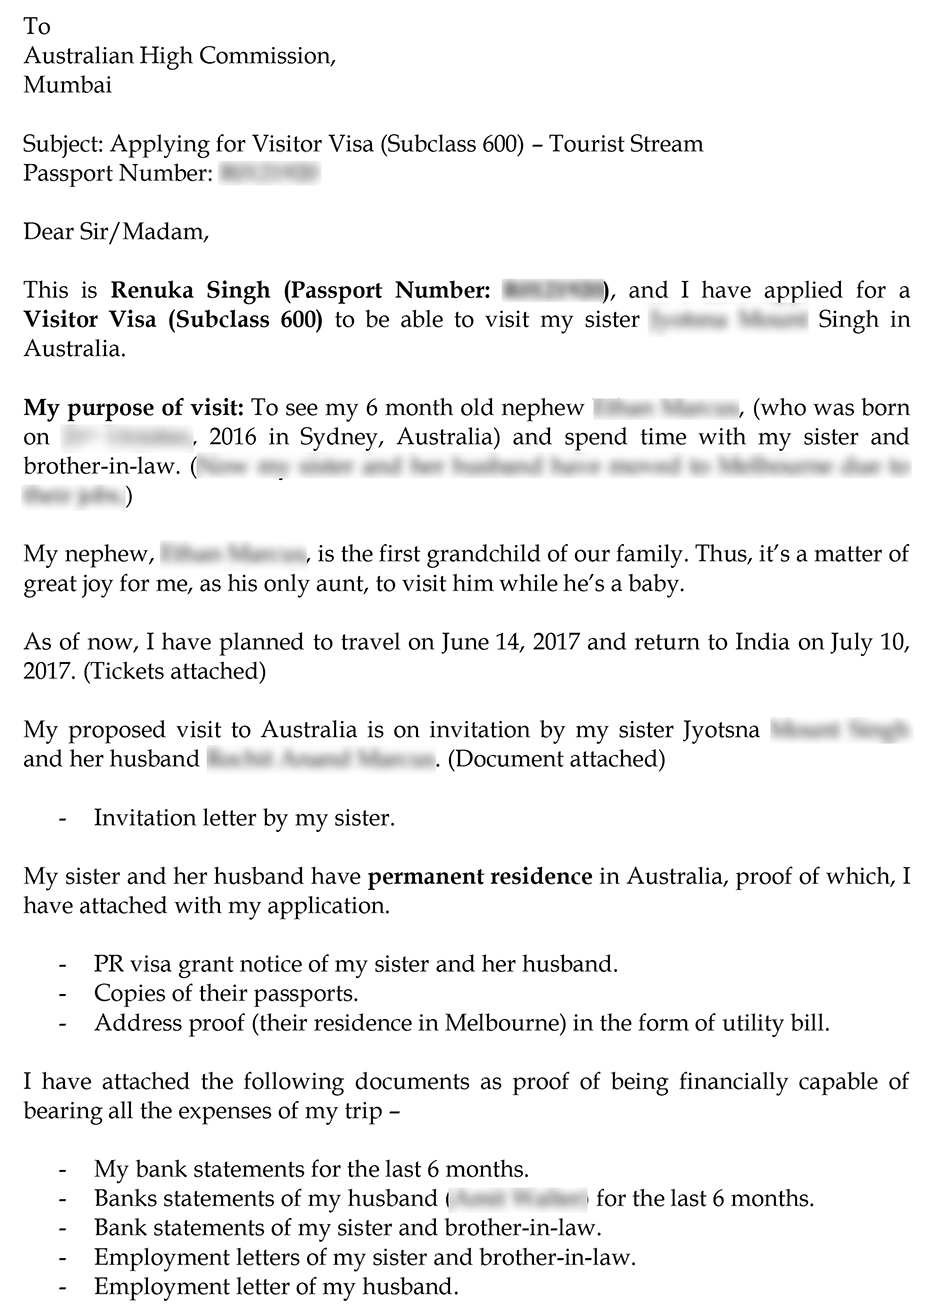 IMG-Cover letter sample for Australia Visa